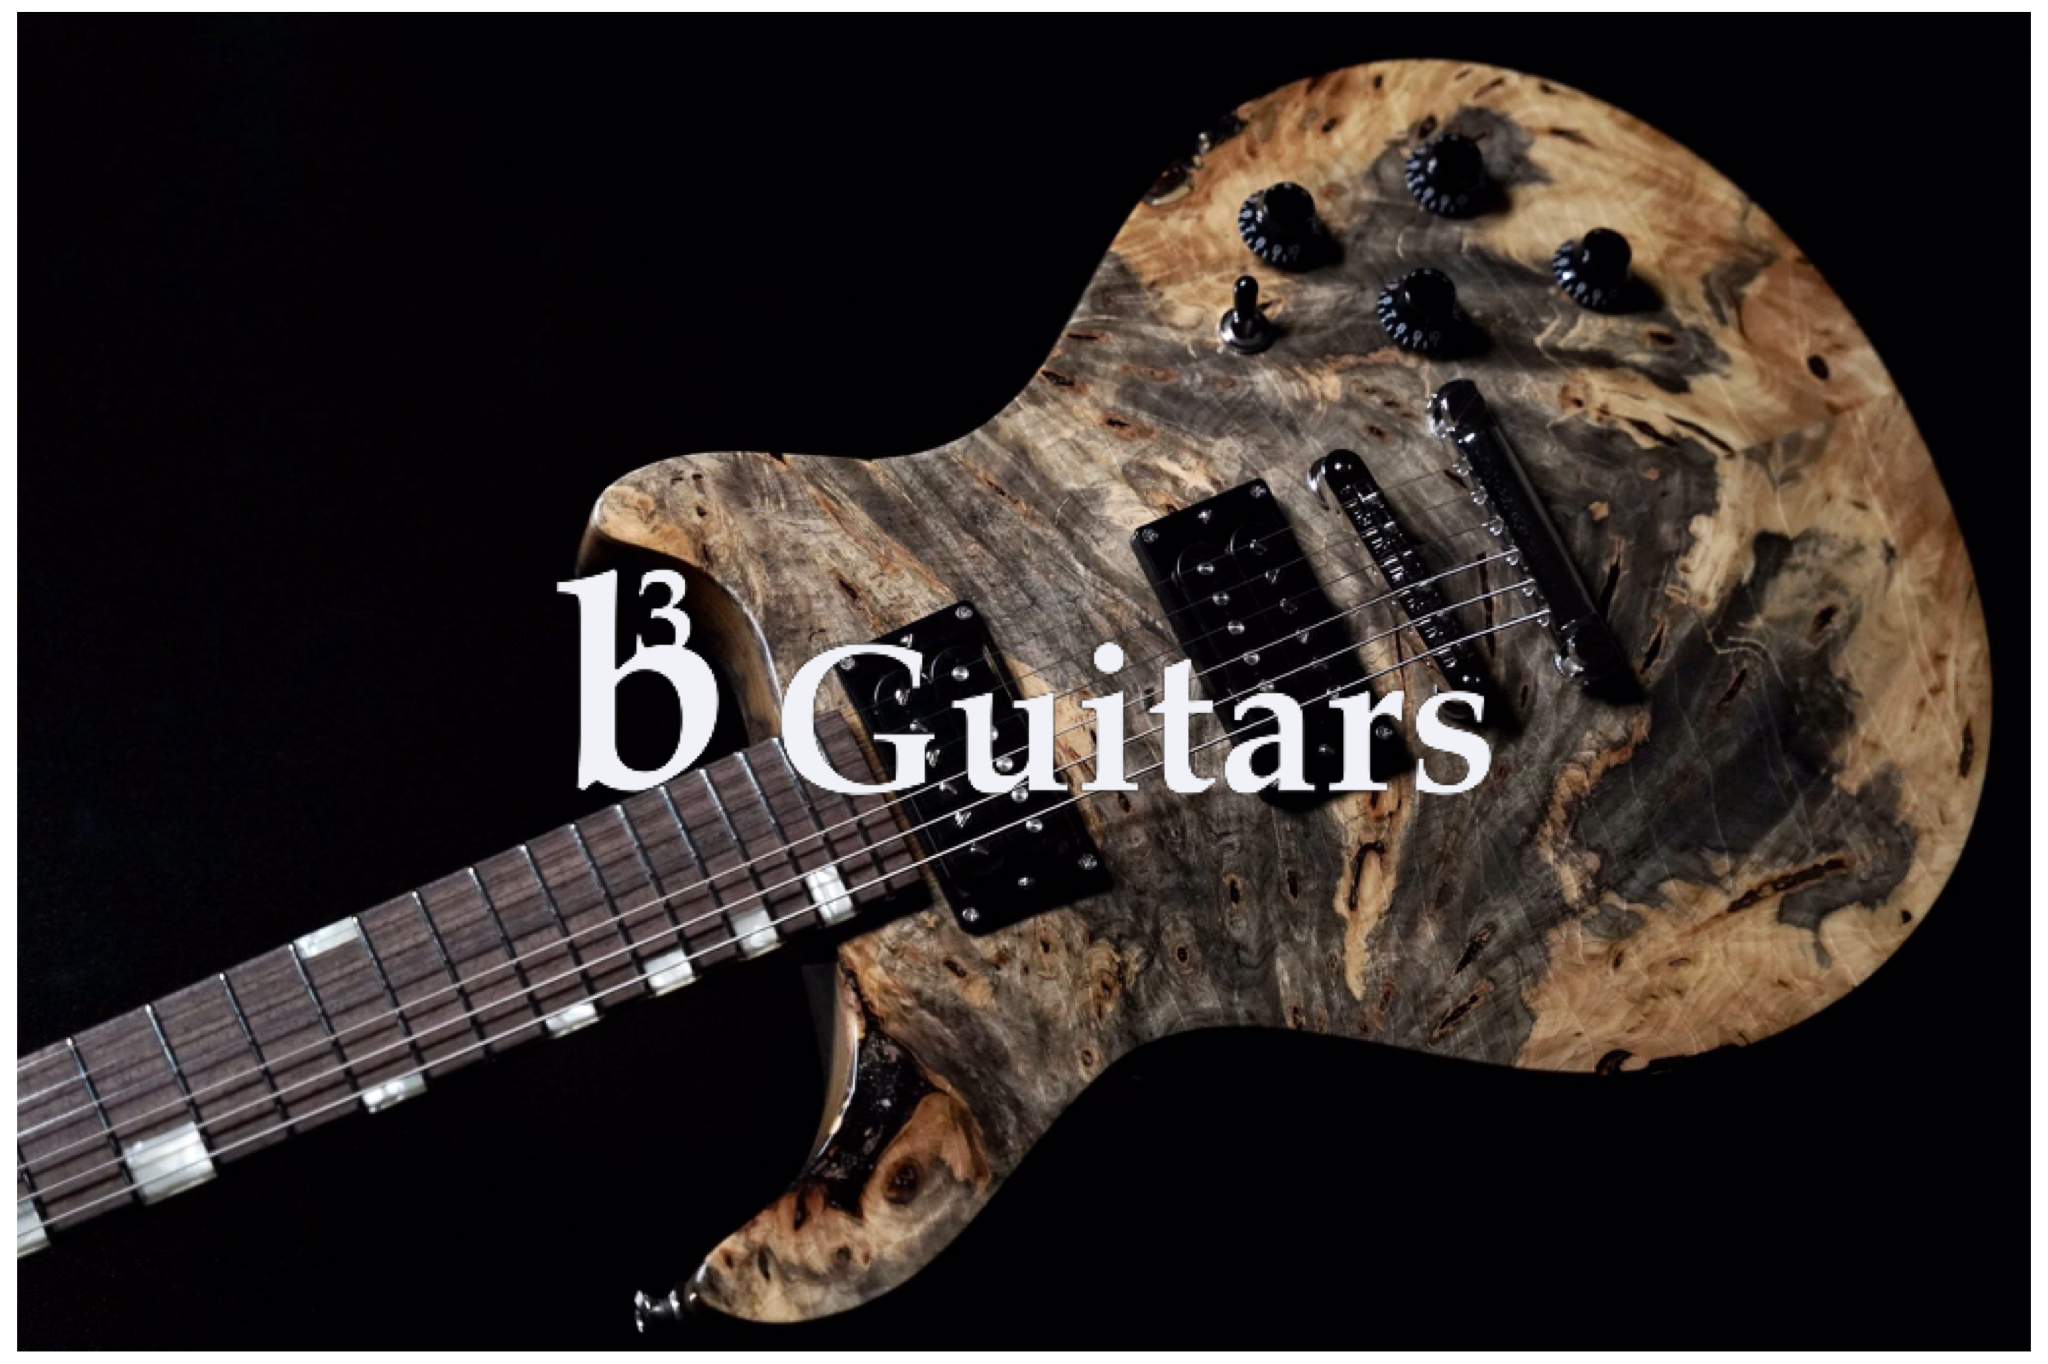 b3 Guitars-built by baker- を選ぶなら静岡パルコ店へ